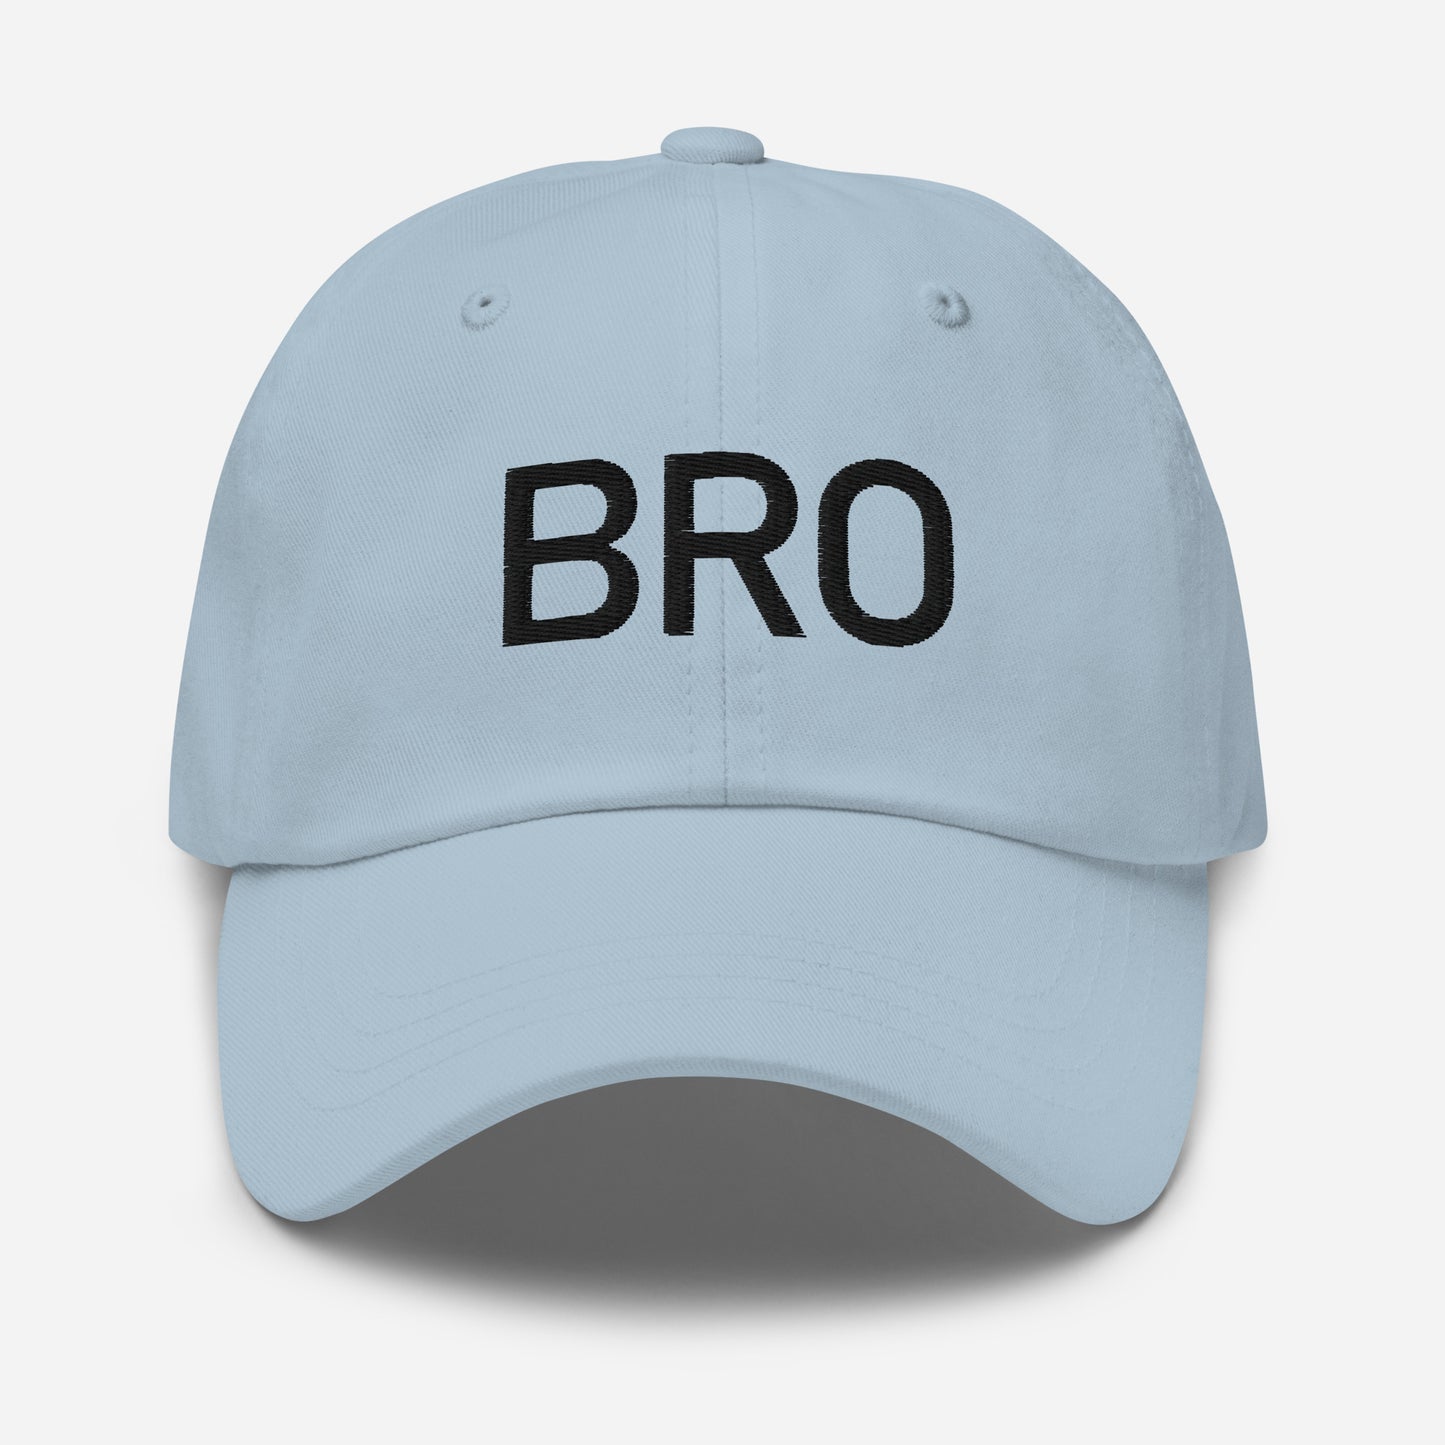 Bro - Sustainably Made Baseball Cap